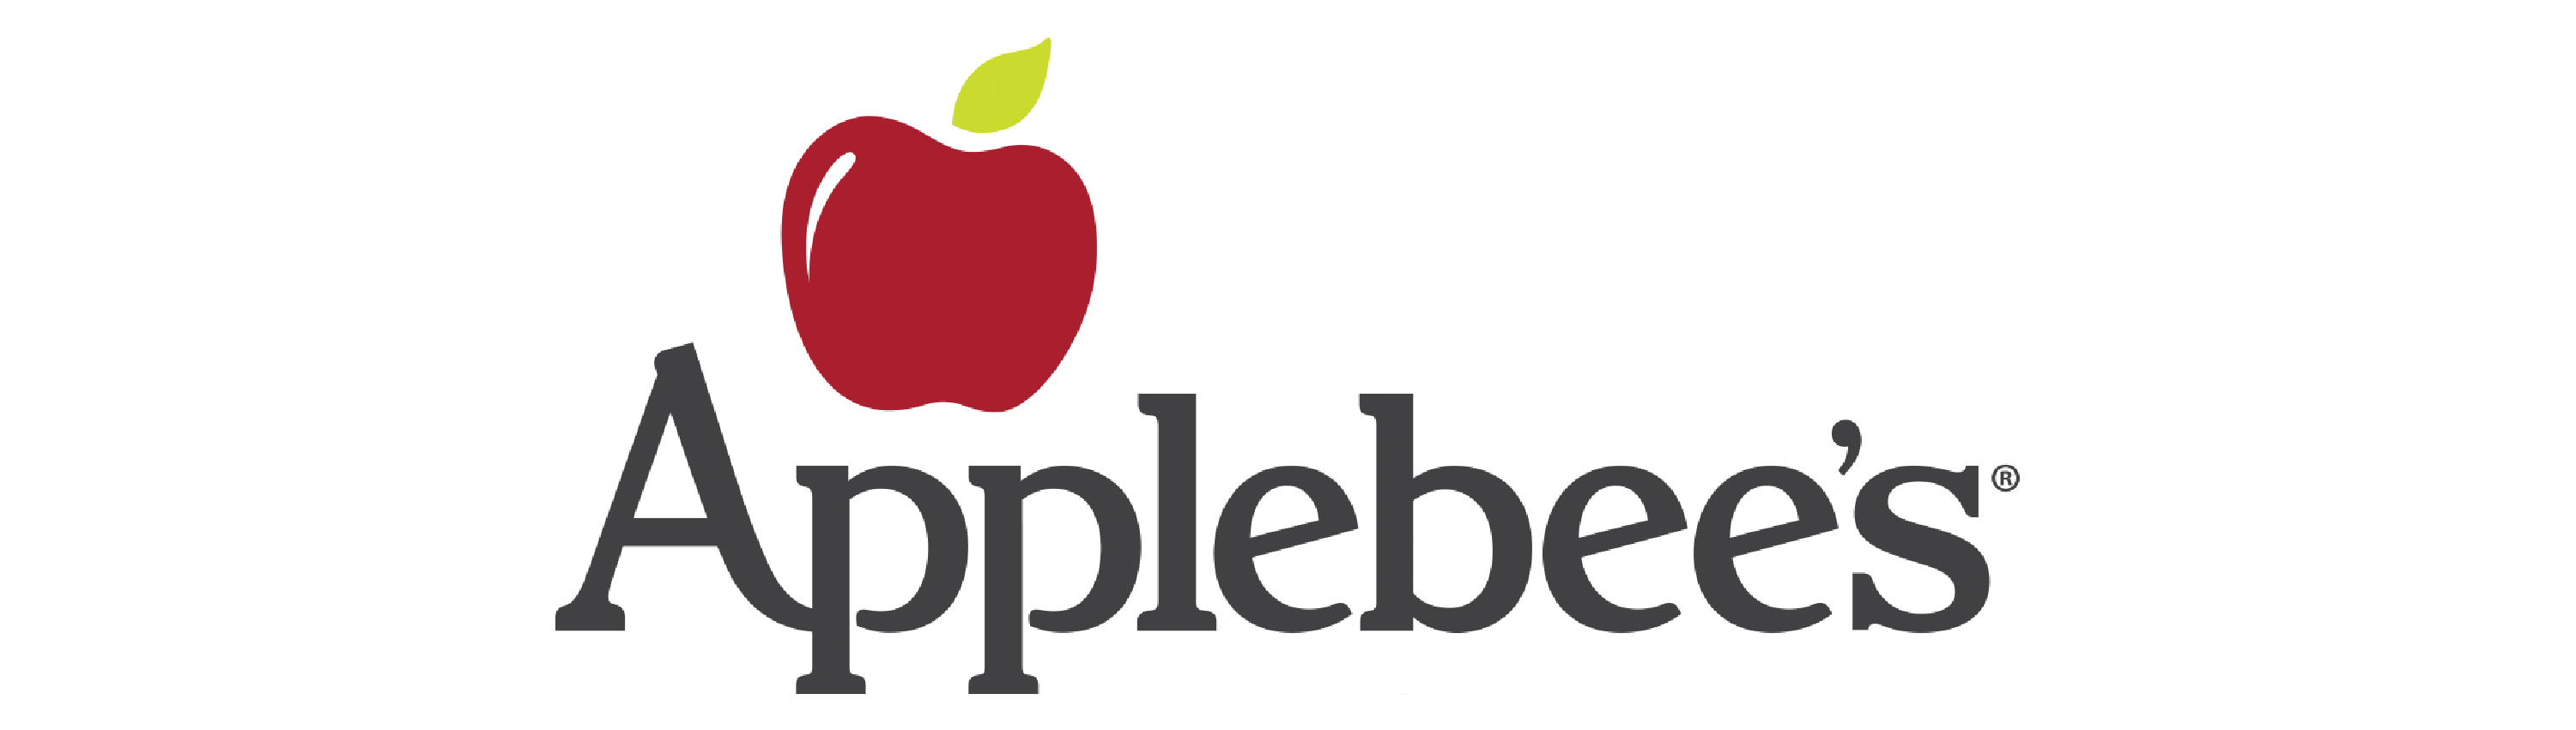 logos clientes_applebees